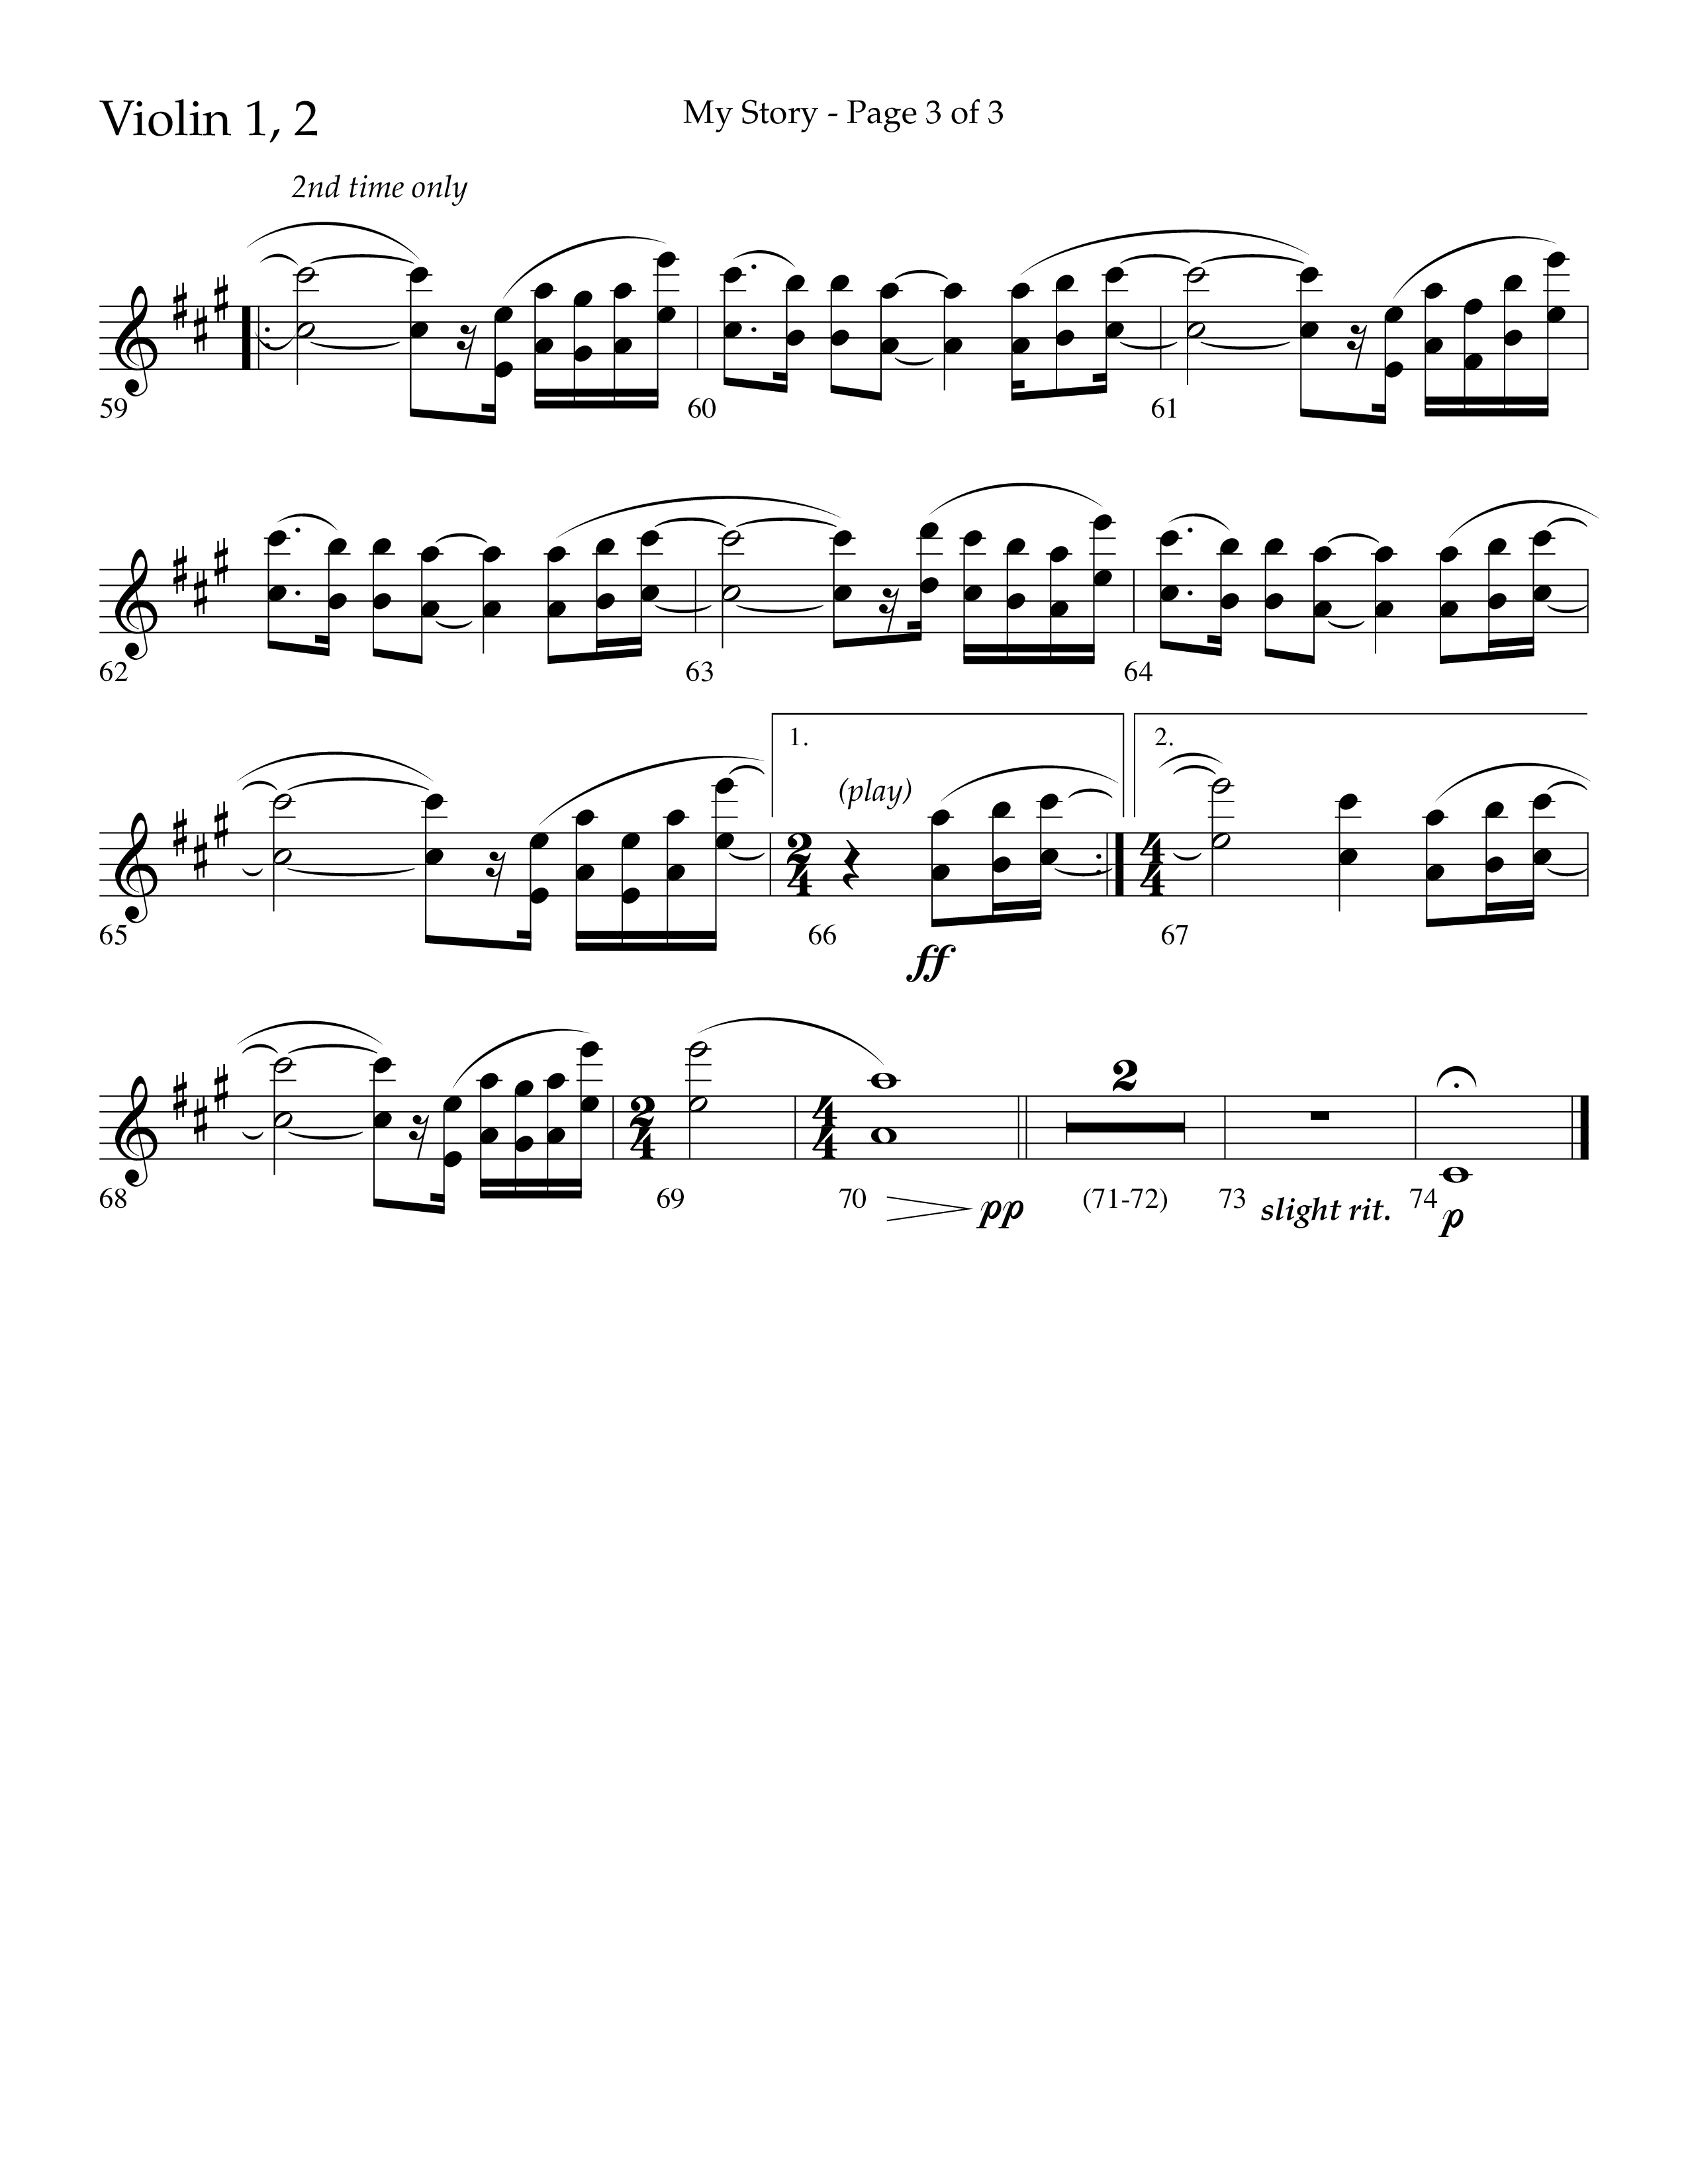 My Story (Choral Anthem SATB) Violin 1/2 (Lifeway Choral / Arr. Craig Adams)